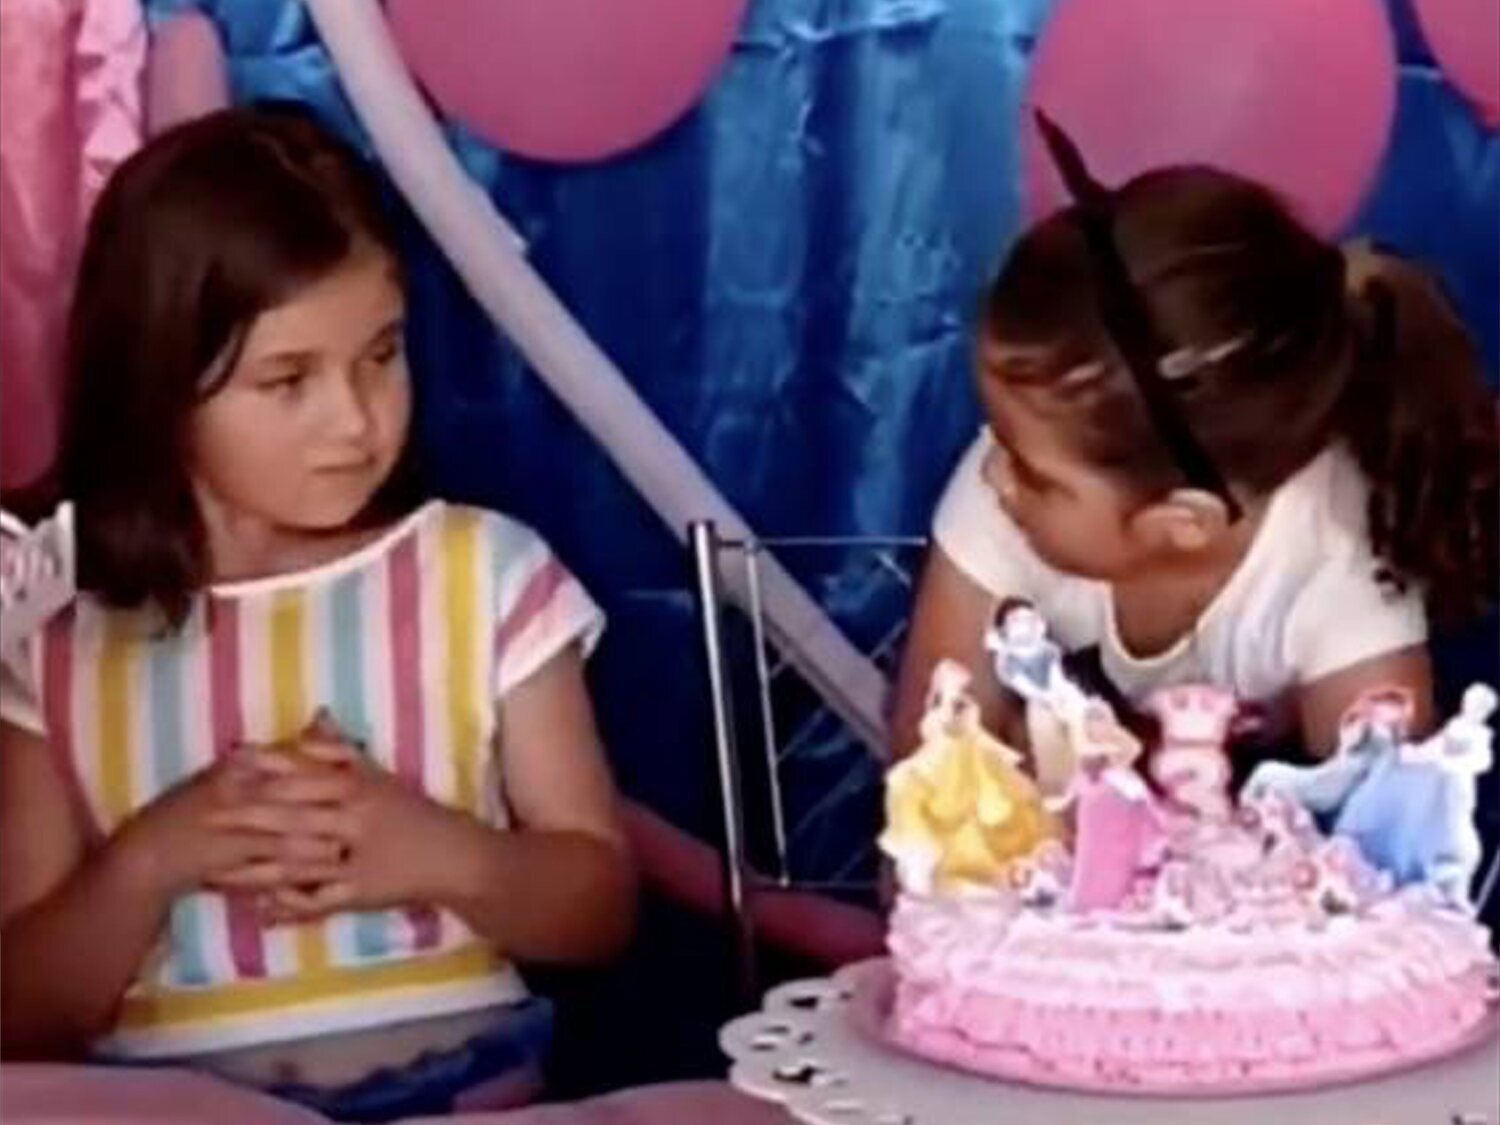 ¿Recuerdas el viral del cumpleaños? Sus protagonistas reaparecen con otro vídeo un año después